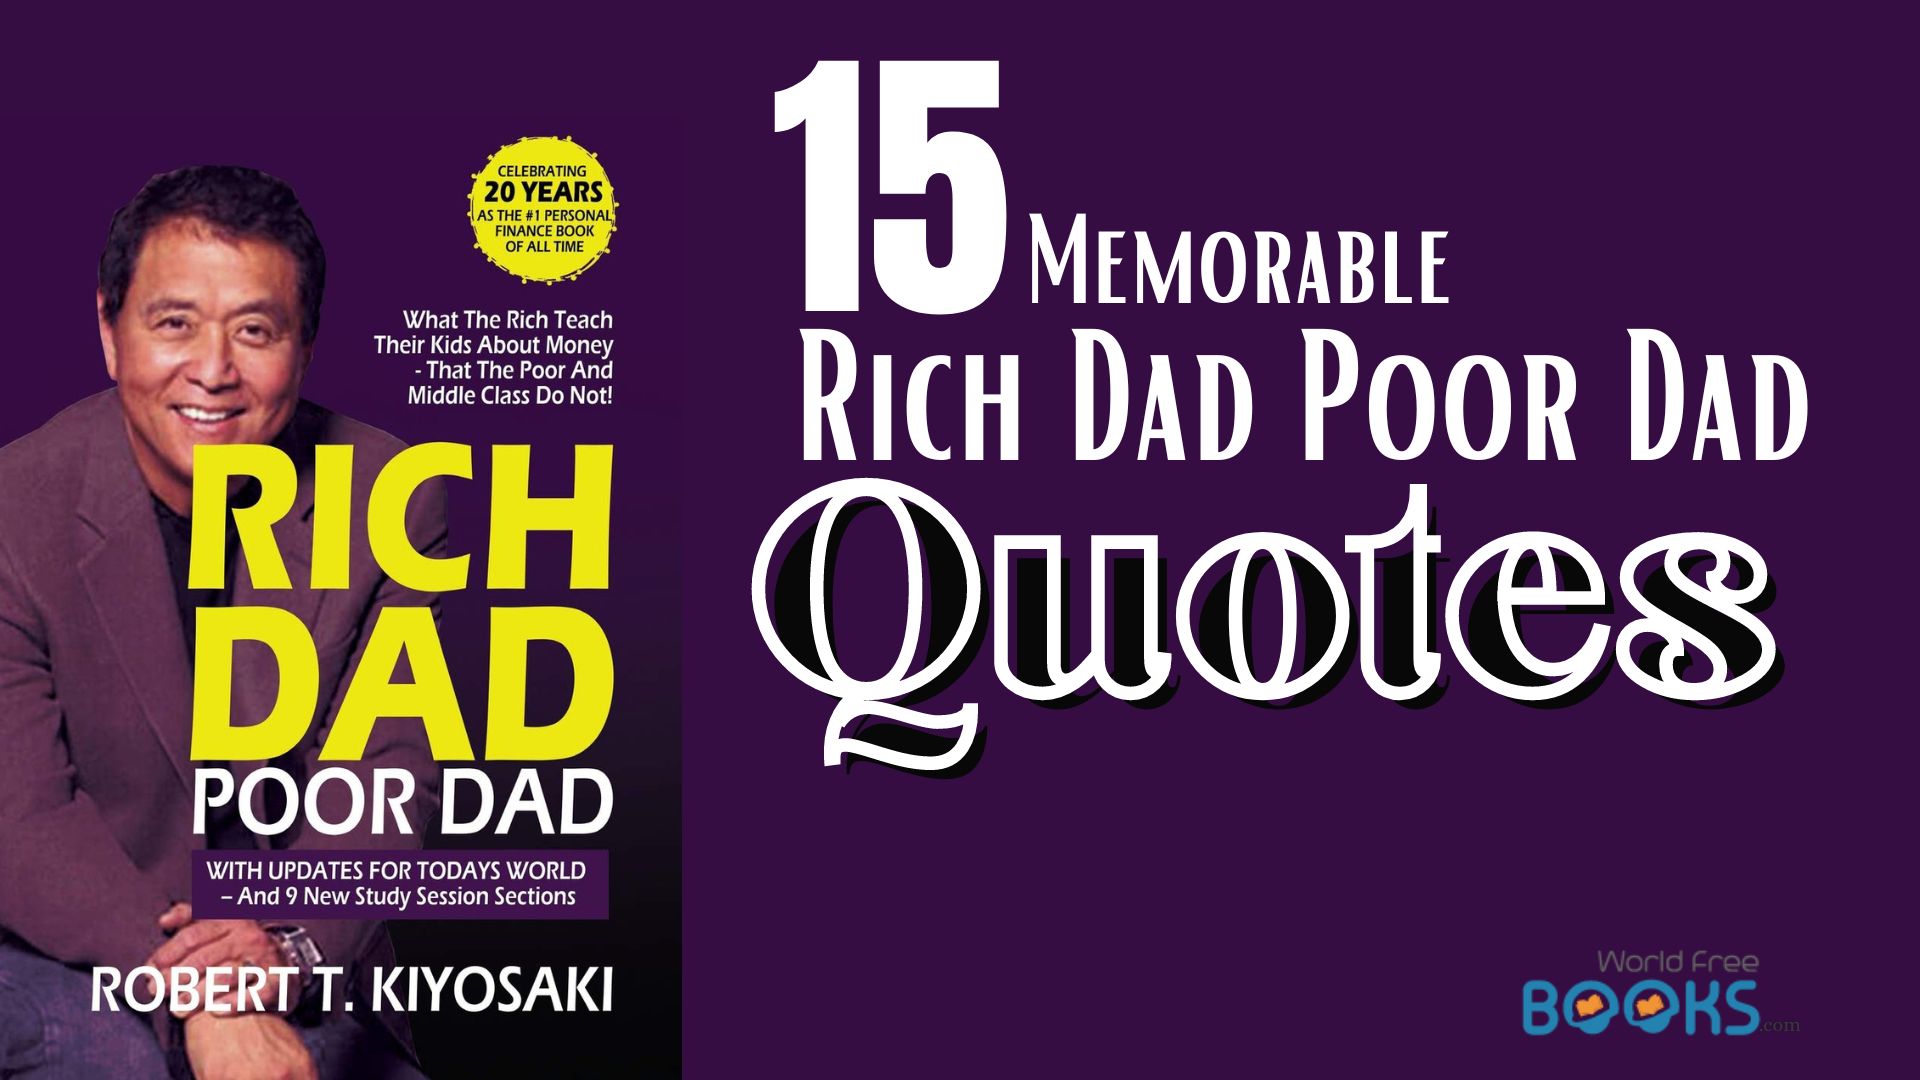 Memorable Rich Dad Poor Dad Quotes